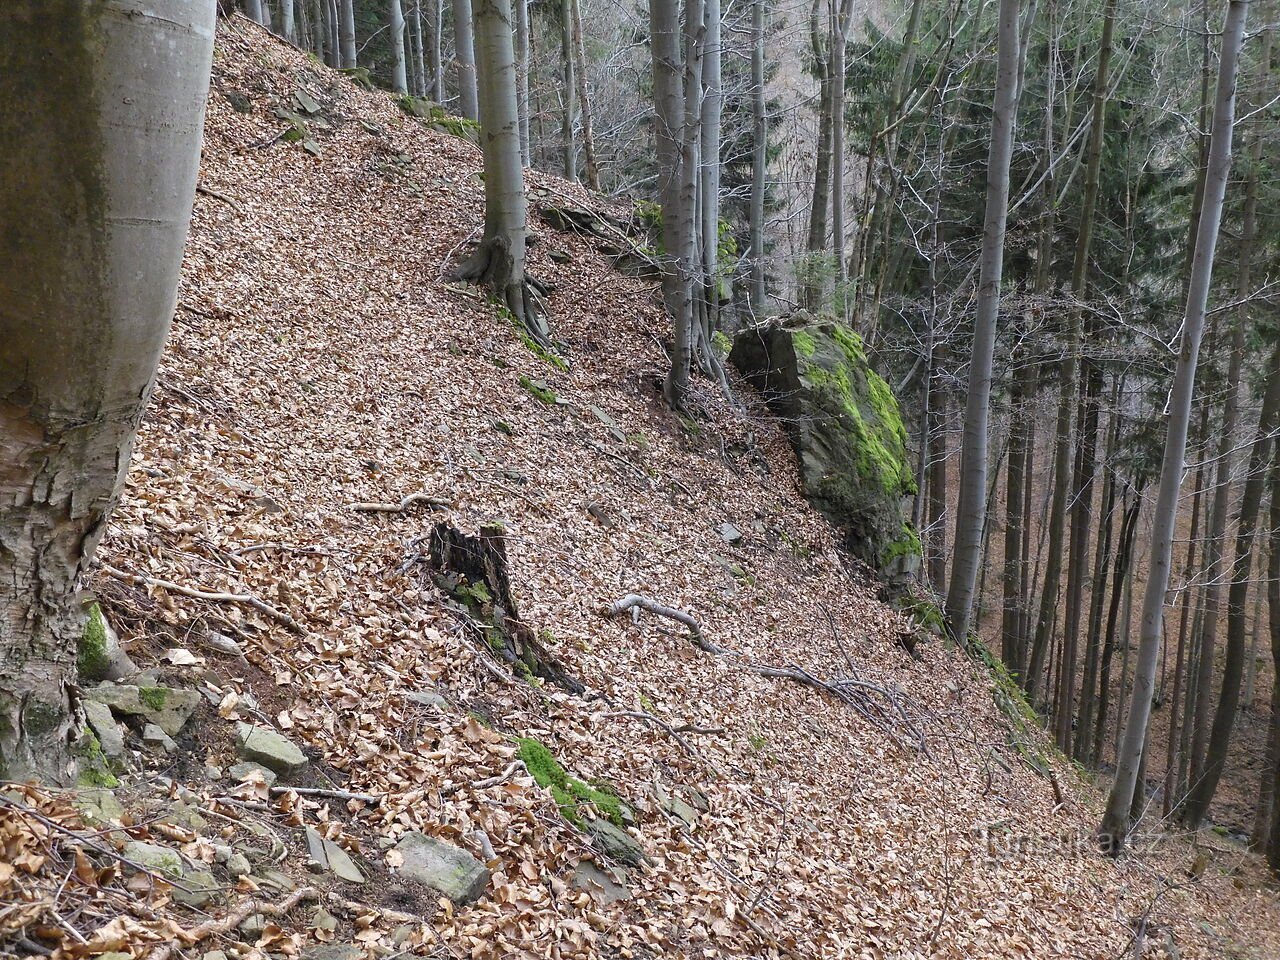 Interesantes formaciones rocosas y de piedra al norte de la cresta Sulov - Mosty u Jablunkova, parte 4.